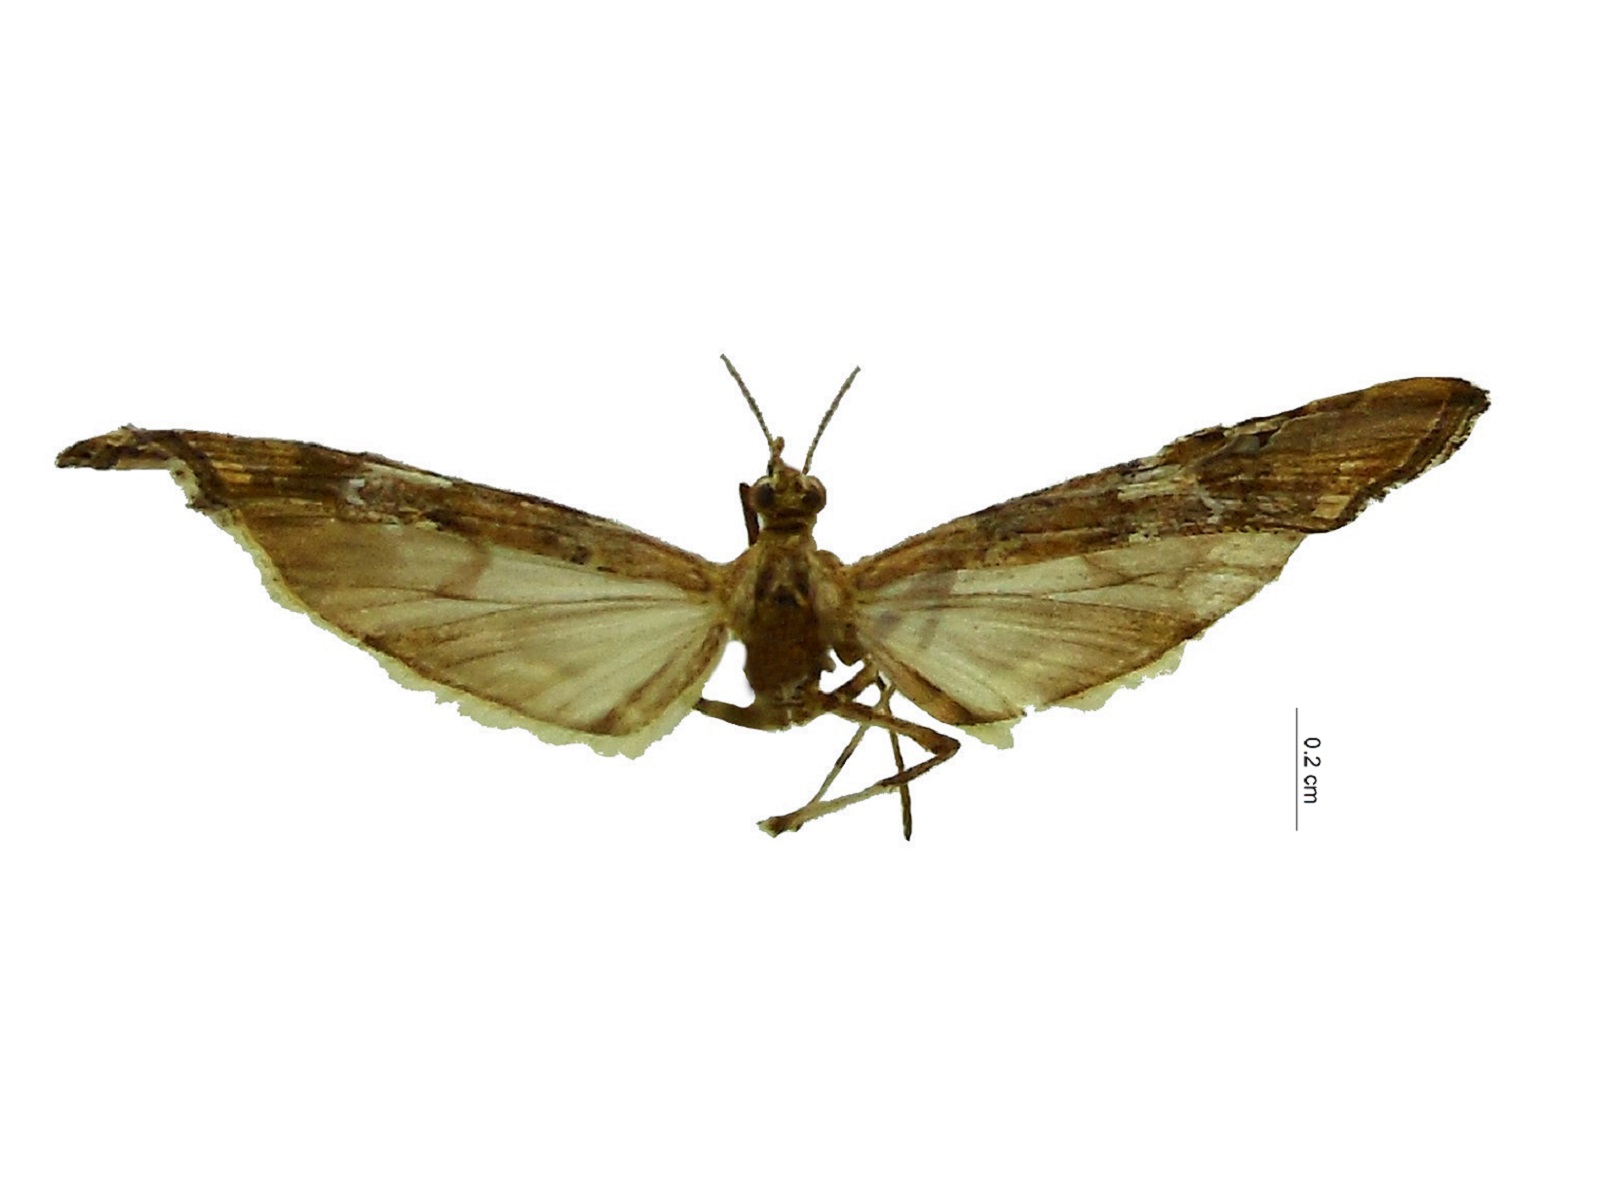 Atomopteryx coelodactyla (Zeller, 1863)